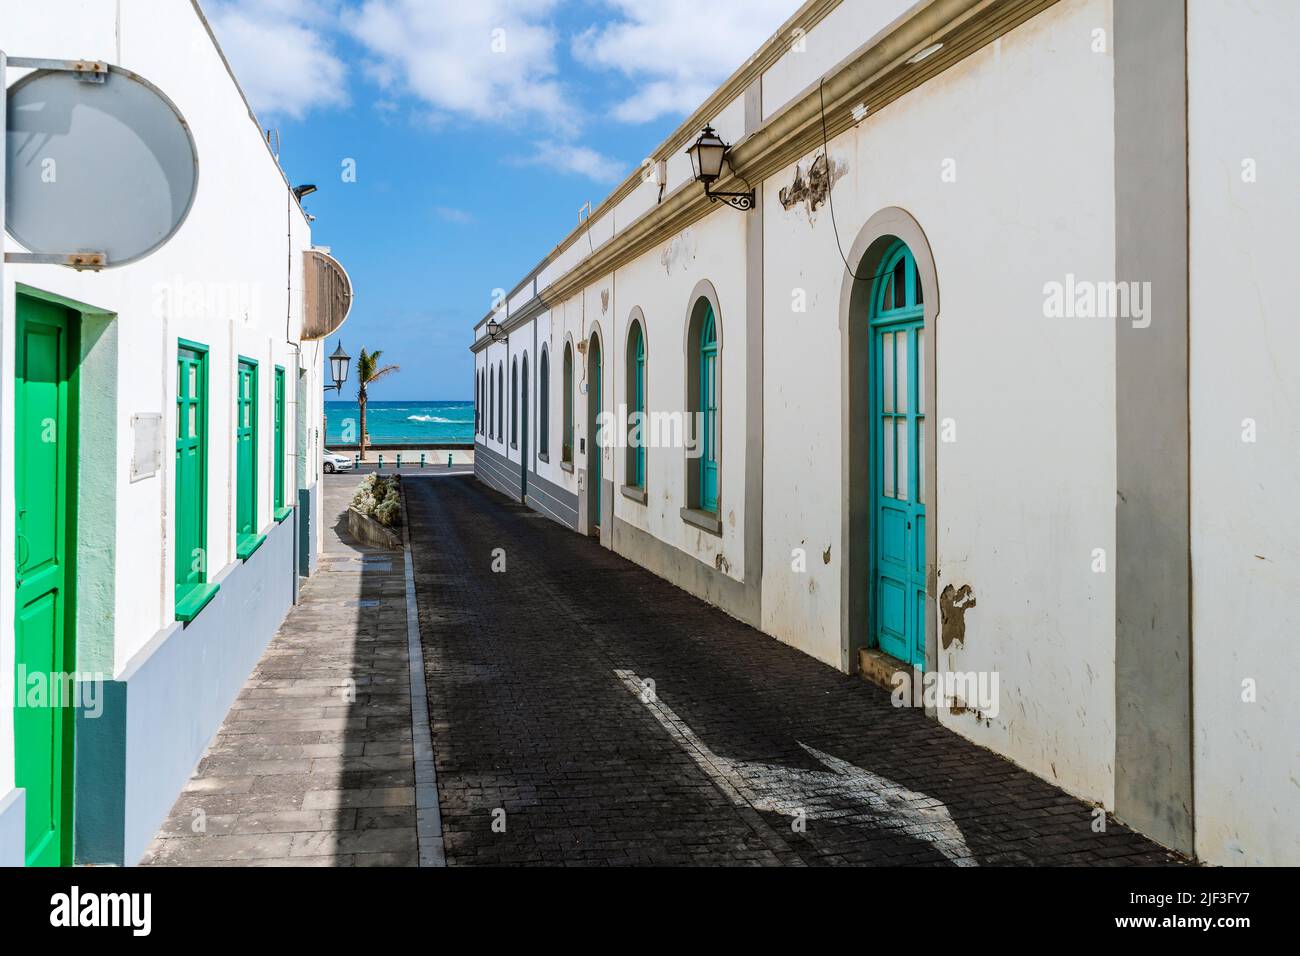 Encantadora calle tradicional con casas encaladas y coloridas ventanas y puertas en Arrecife, Lanzarote, Islas Canarias, España Foto de stock